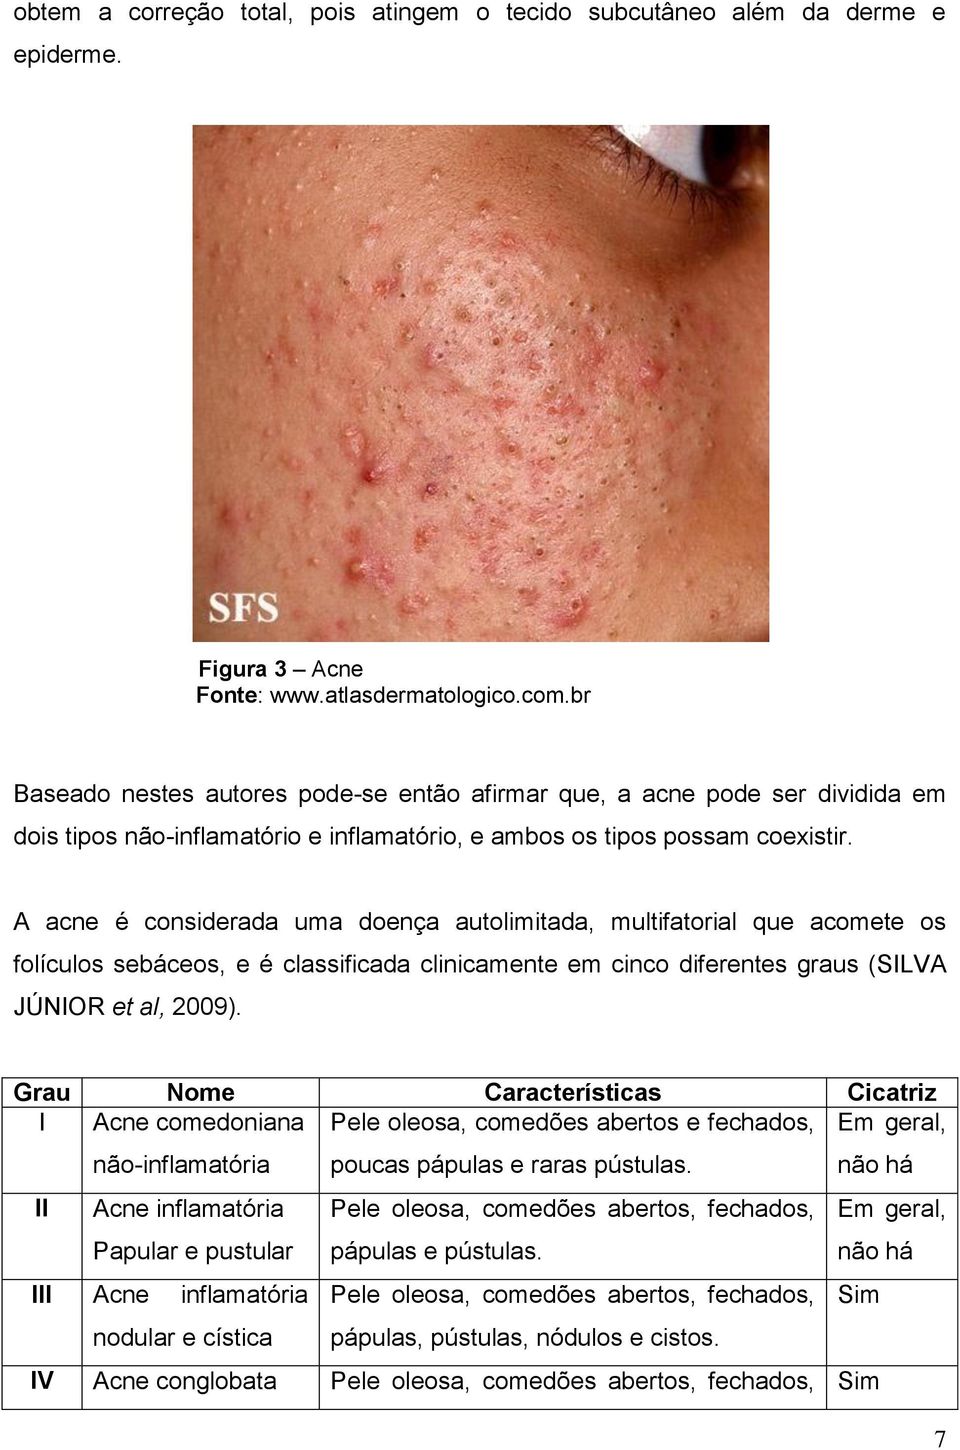 A acne é considerada uma doença autolimitada, multifatorial que acomete os folículos sebáceos, e é classificada clinicamente em cinco diferentes graus (SILVA JÚNIOR et al, 2009).